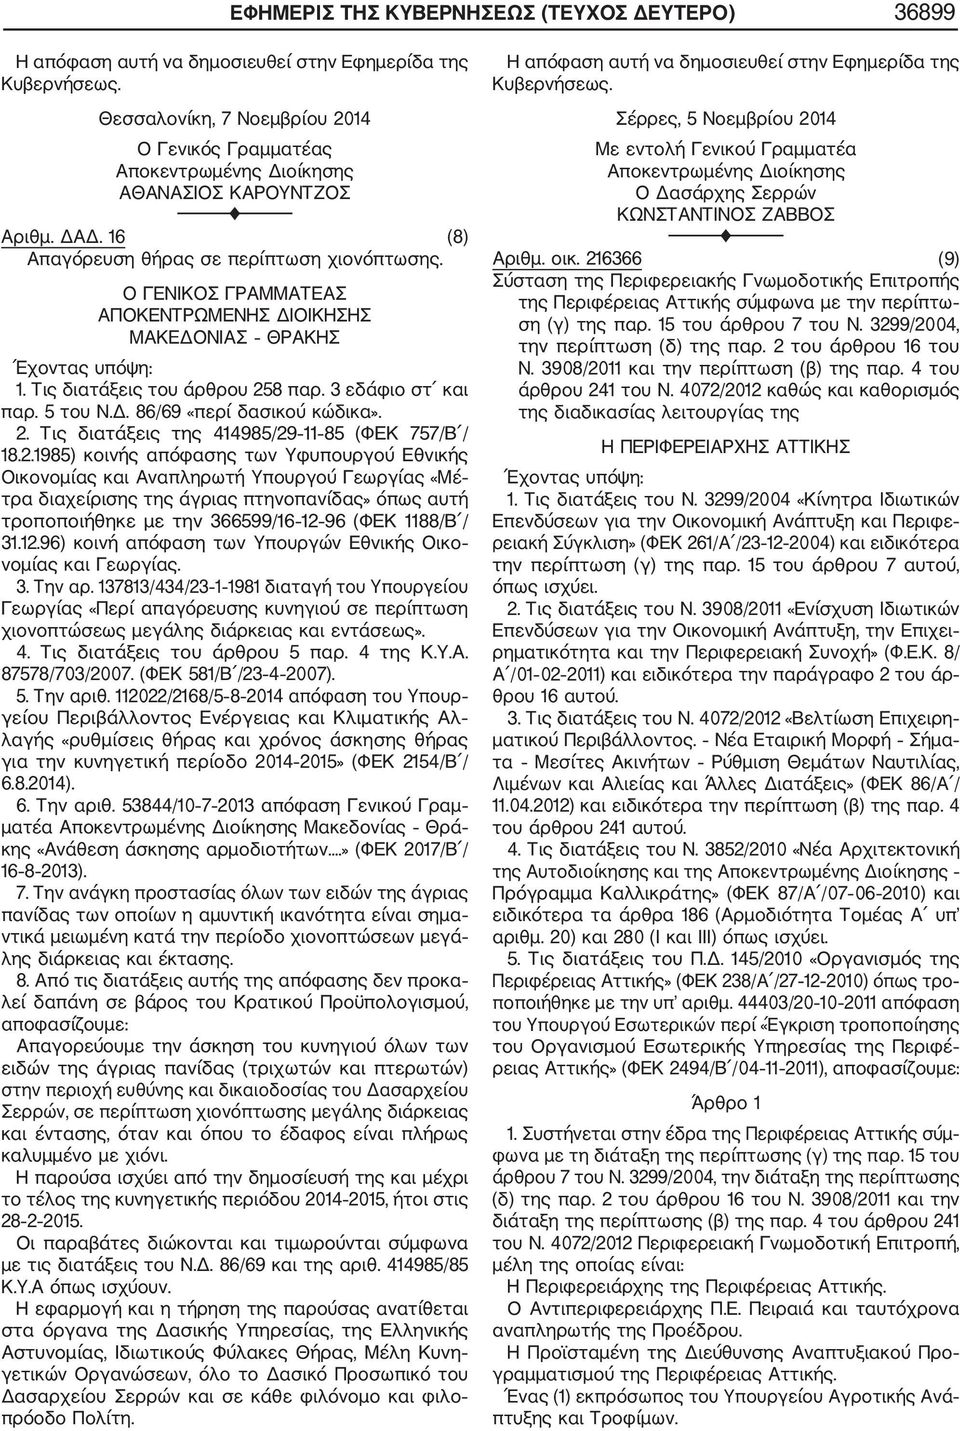 2. Τις διατάξεις της 414985/29 11 85 (ΦΕΚ 757/Β / 18.2.1985) κοινής απόφασης των Υφυπουργού Εθνικής Οικονομίας και Αναπληρωτή Υπουργού Γεωργίας «Μέ τρα διαχείρισης της άγριας πτηνοπανίδας» όπως αυτή τροποποιήθηκε με την 366599/16 12 96 (ΦΕΚ 1188/Β / 31.